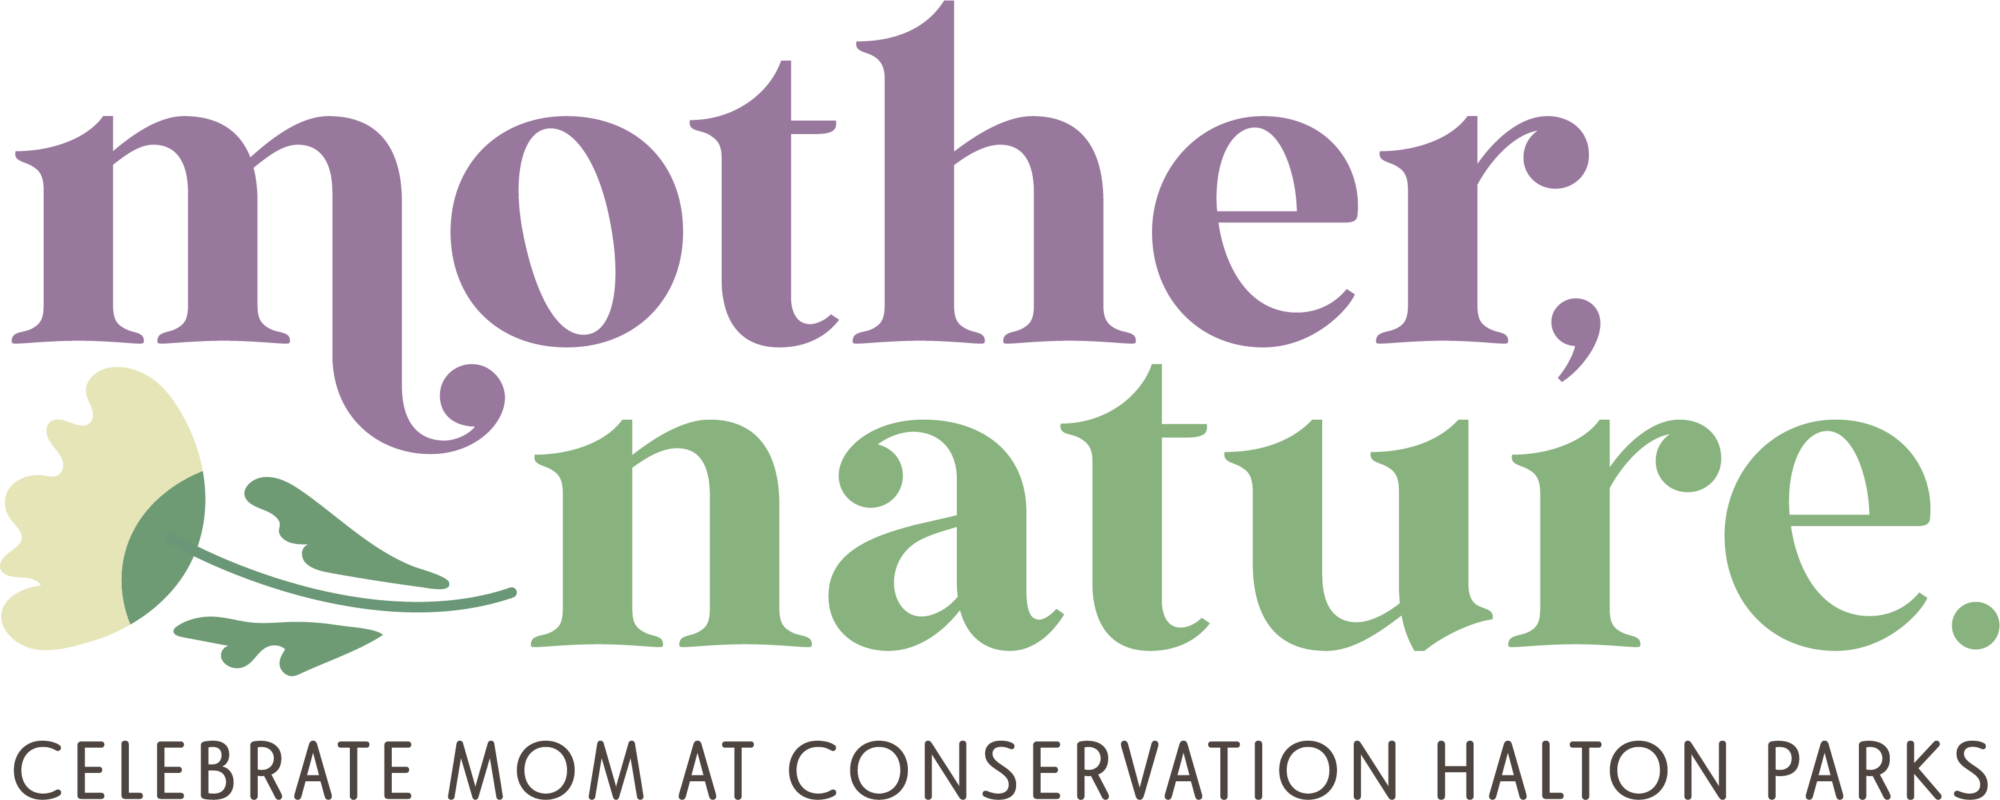 mother nature - celebrate mom at conservation halton parks